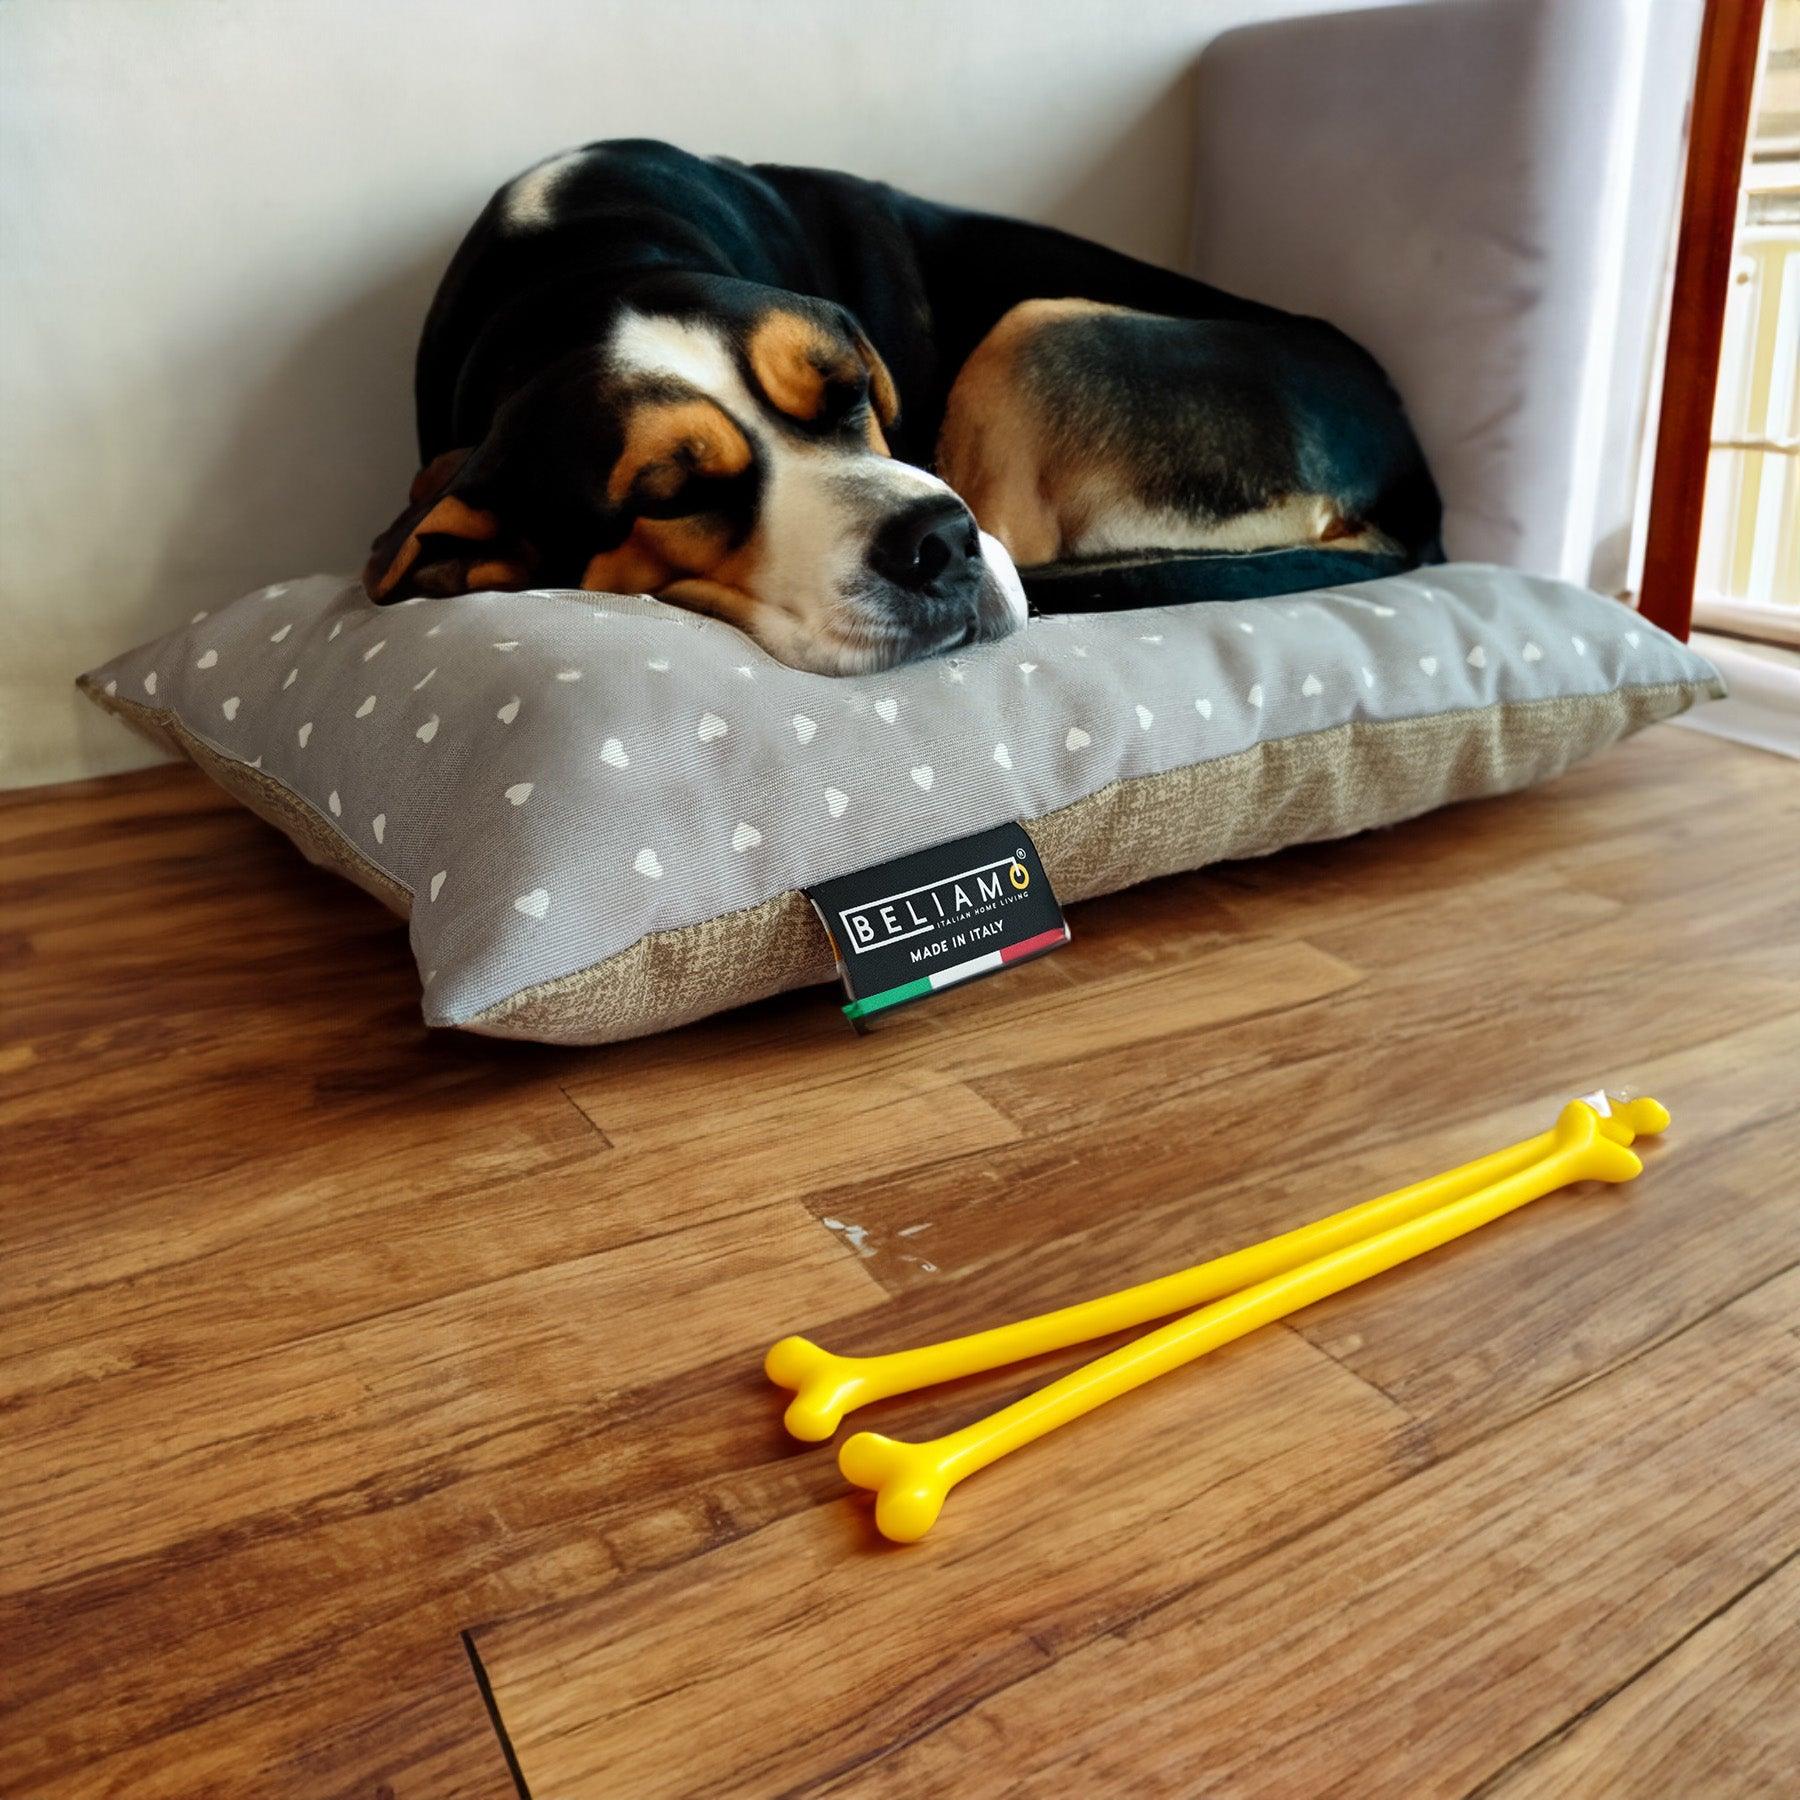 Particolare del cuscino antigraffio Pippo di Beliamo, ideale per garantire un riposo sicuro e confortevole per gli animali domestici